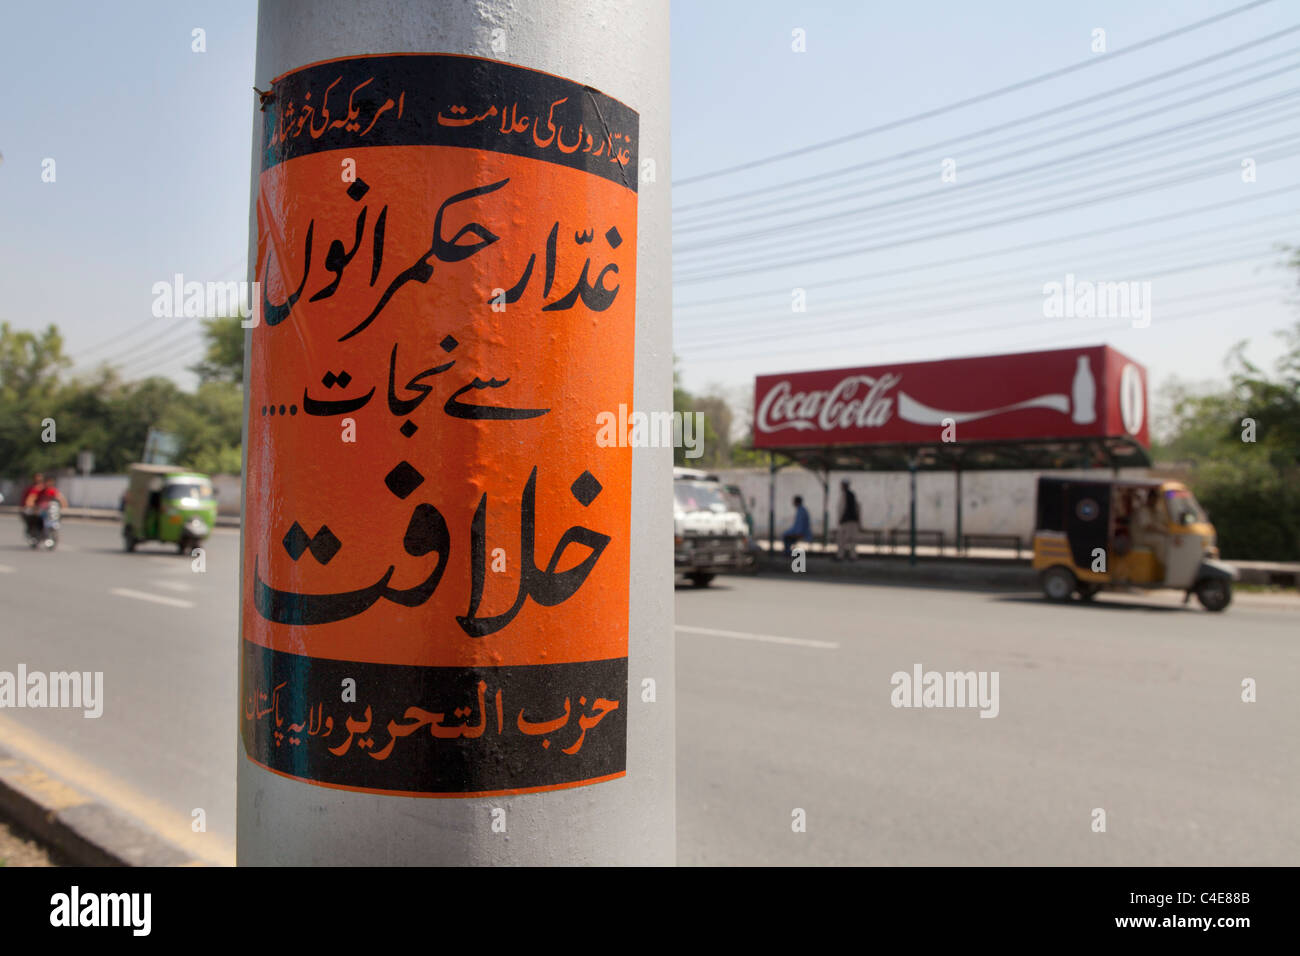 Cartel contra nosotros en Pakistán Foto de stock